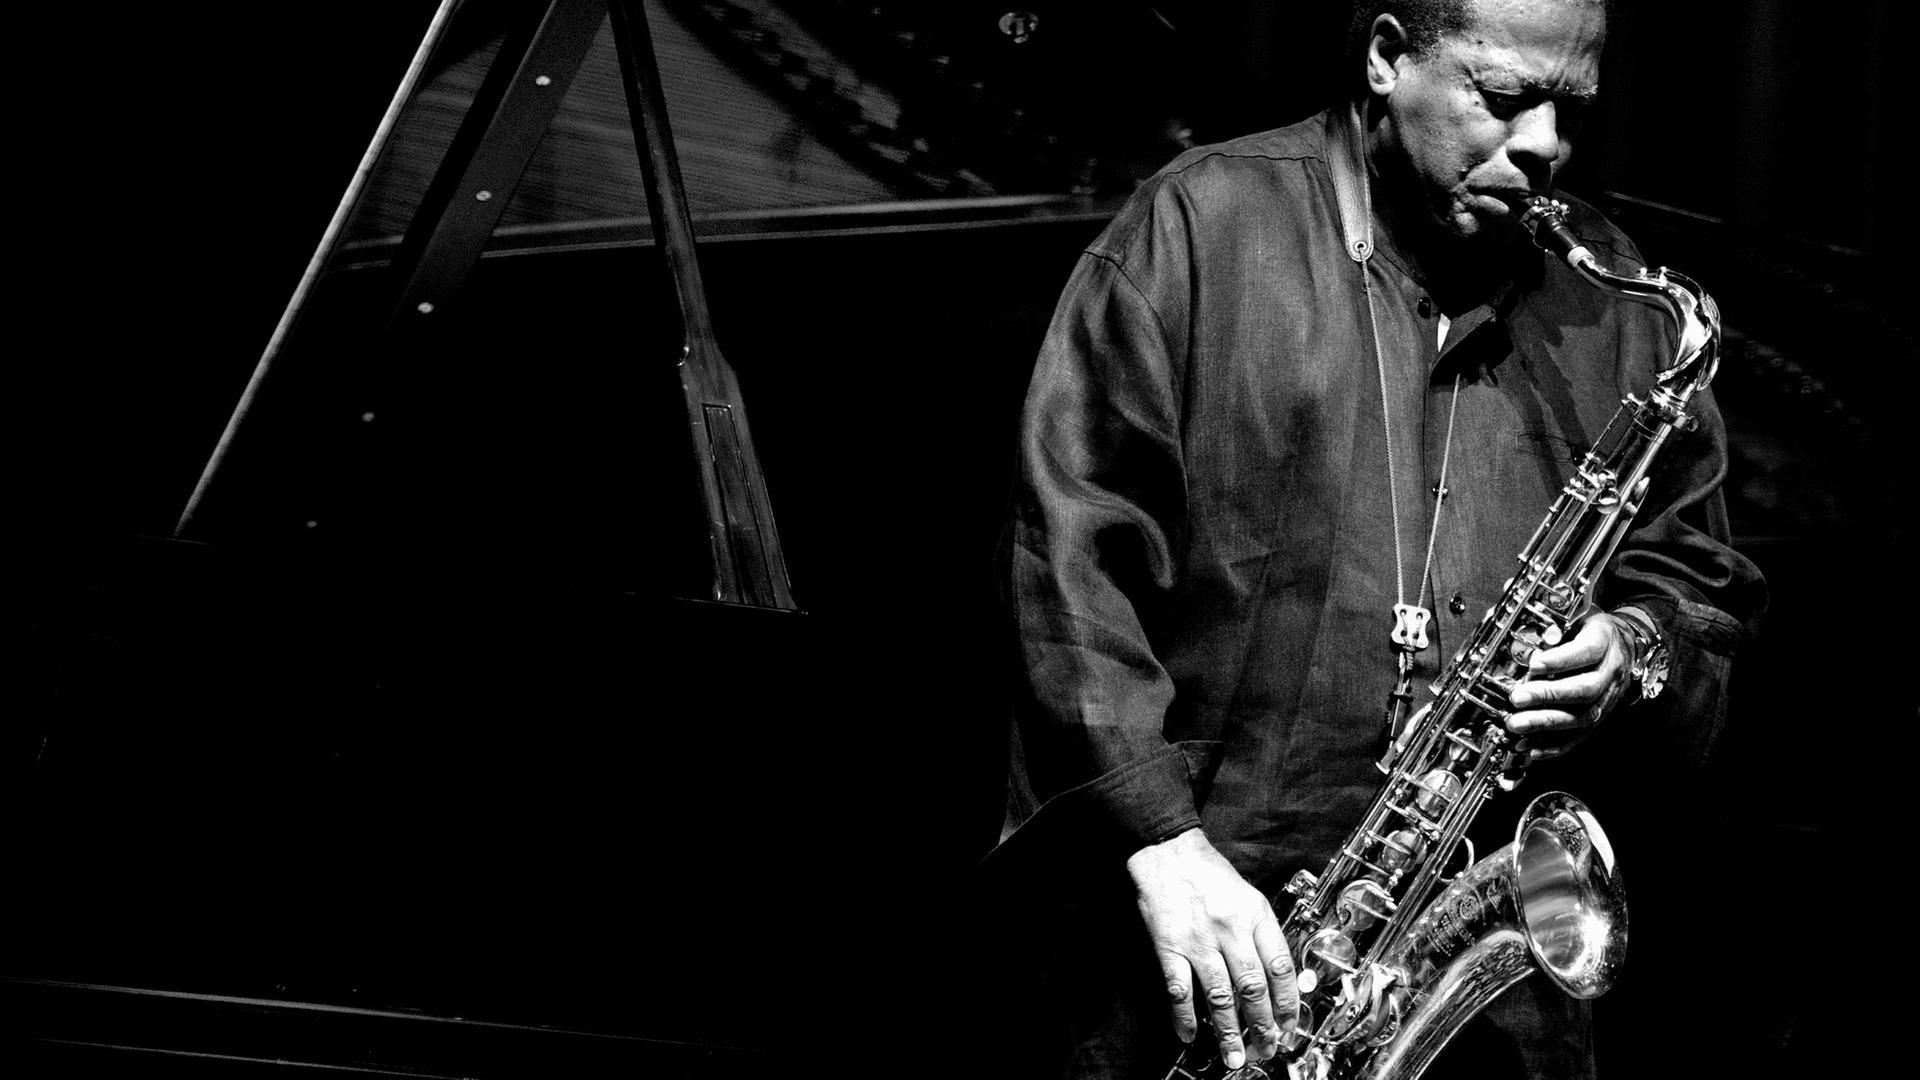 Der Jazz-Komponist und Saxofonist Wayne Shorter auf der Bühne bei einem Konzert, 2011.